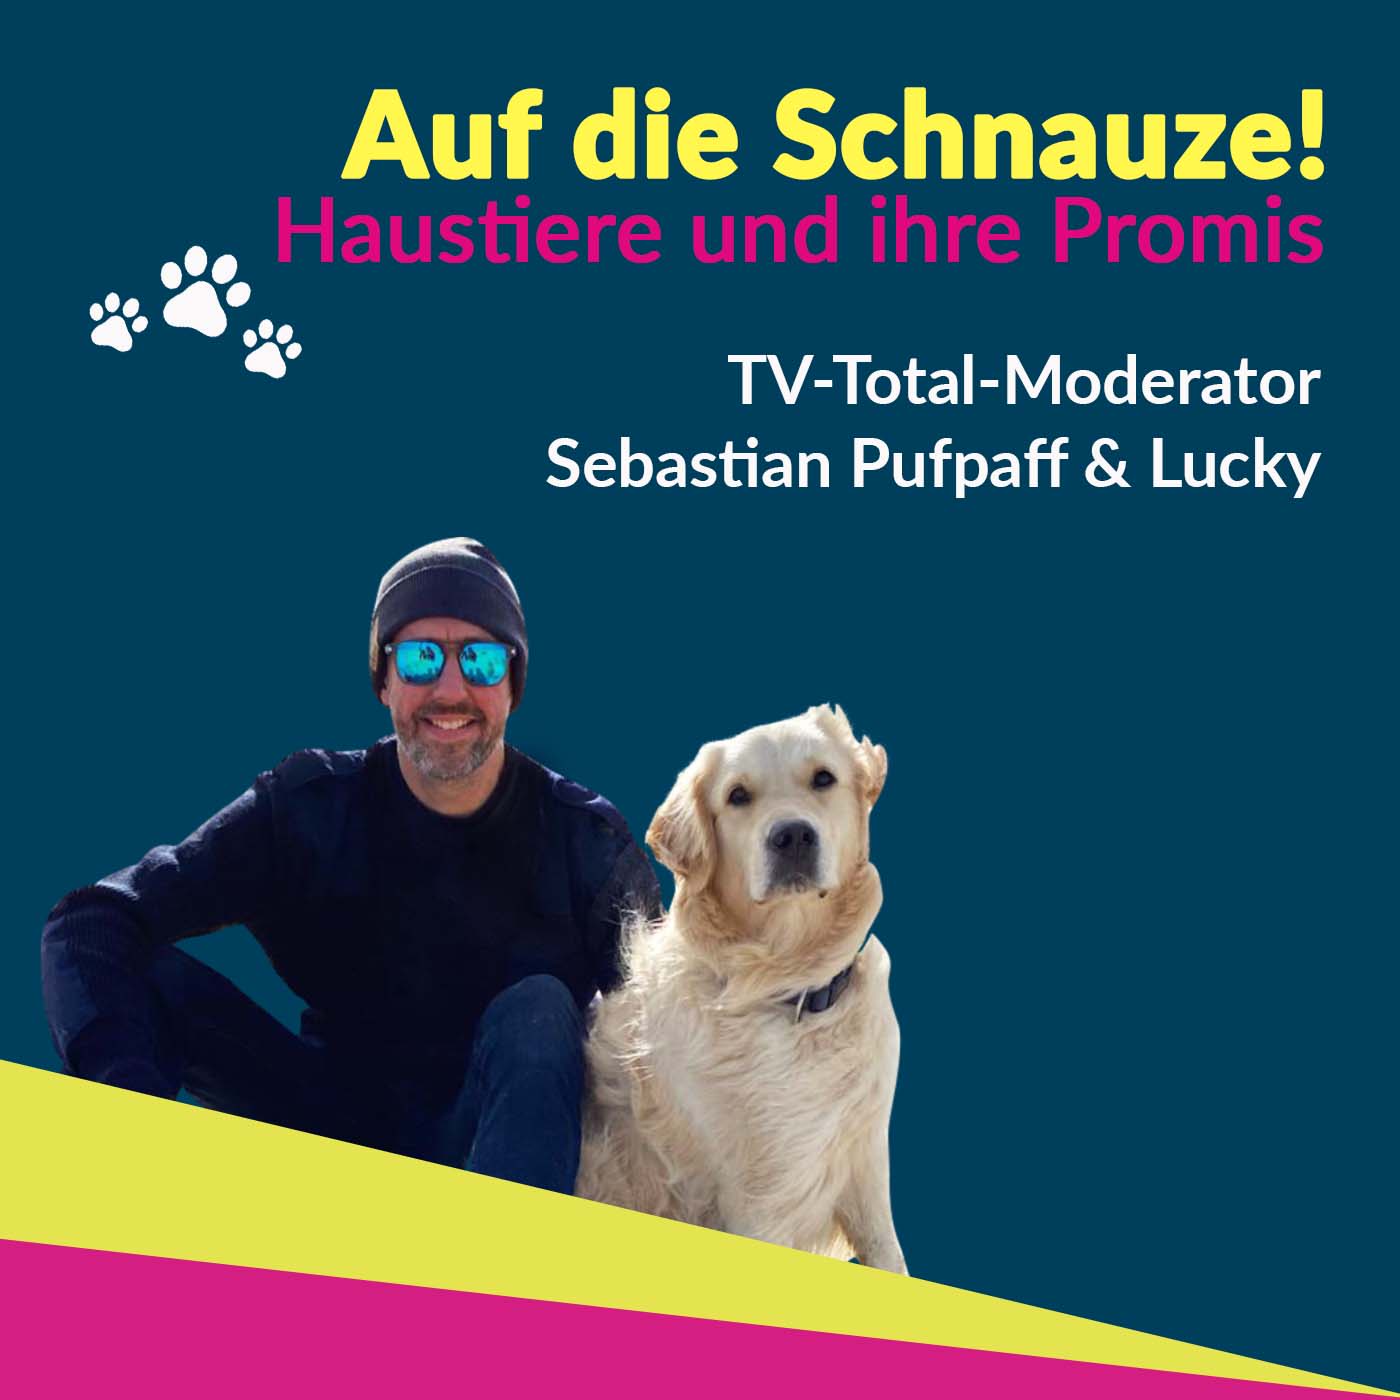 Sebastian Pufpaff - Mit Hund und Humor auf Augenhöhe